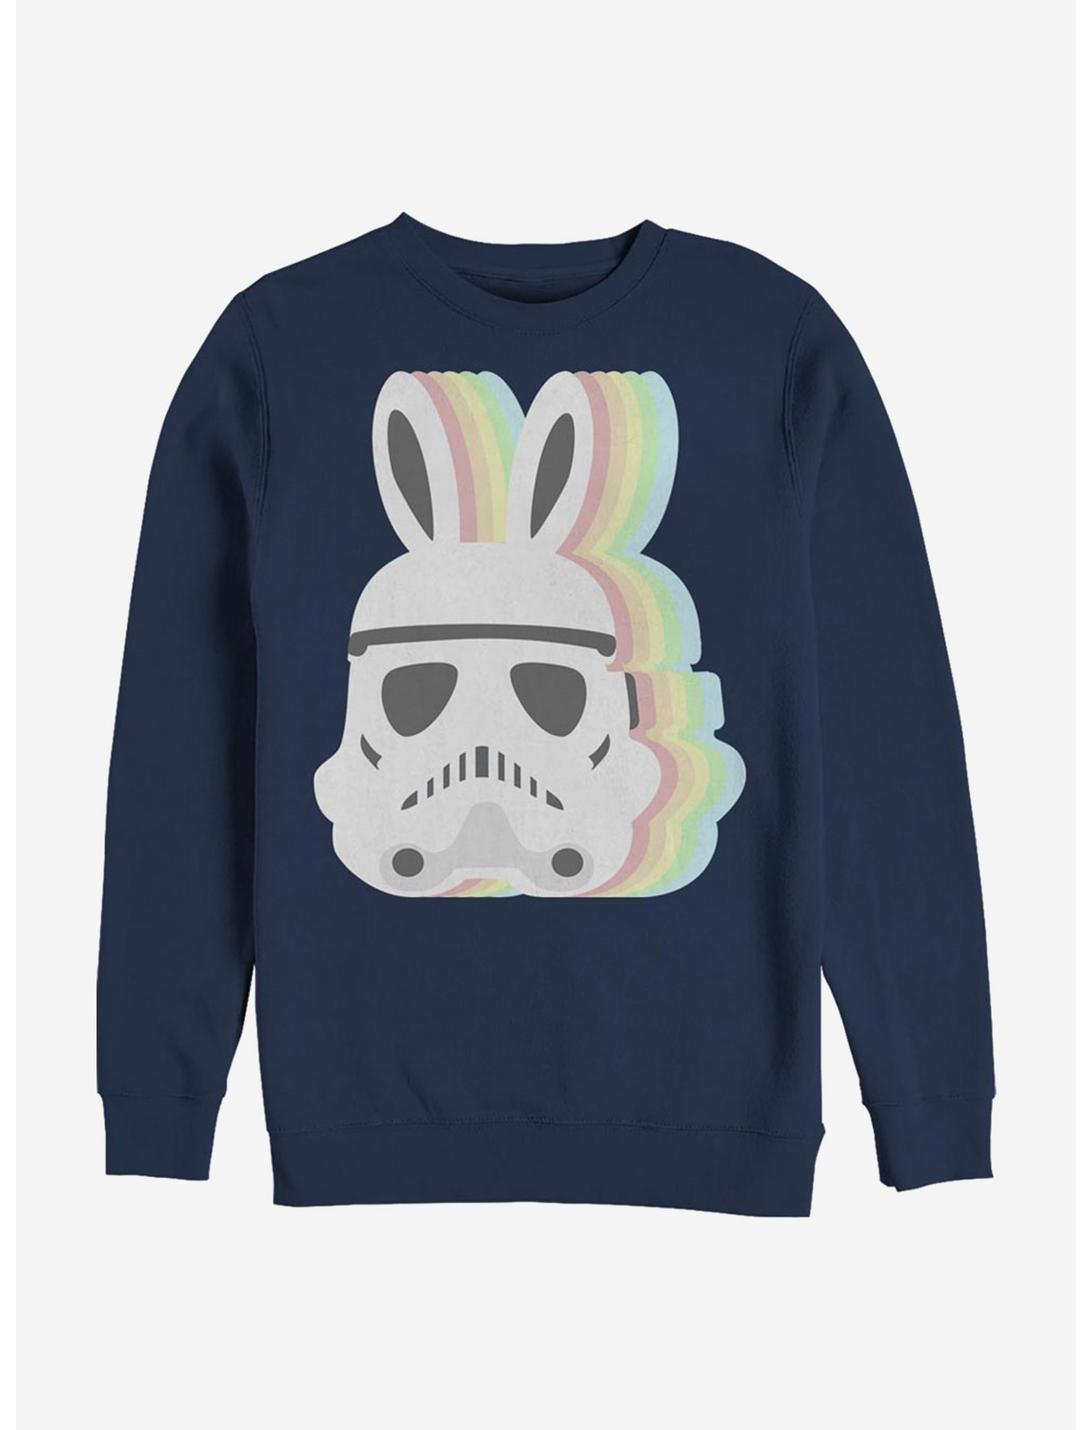 Star Wars Stormtrooper Bunny Sweatshirt, NAVY, hi-res